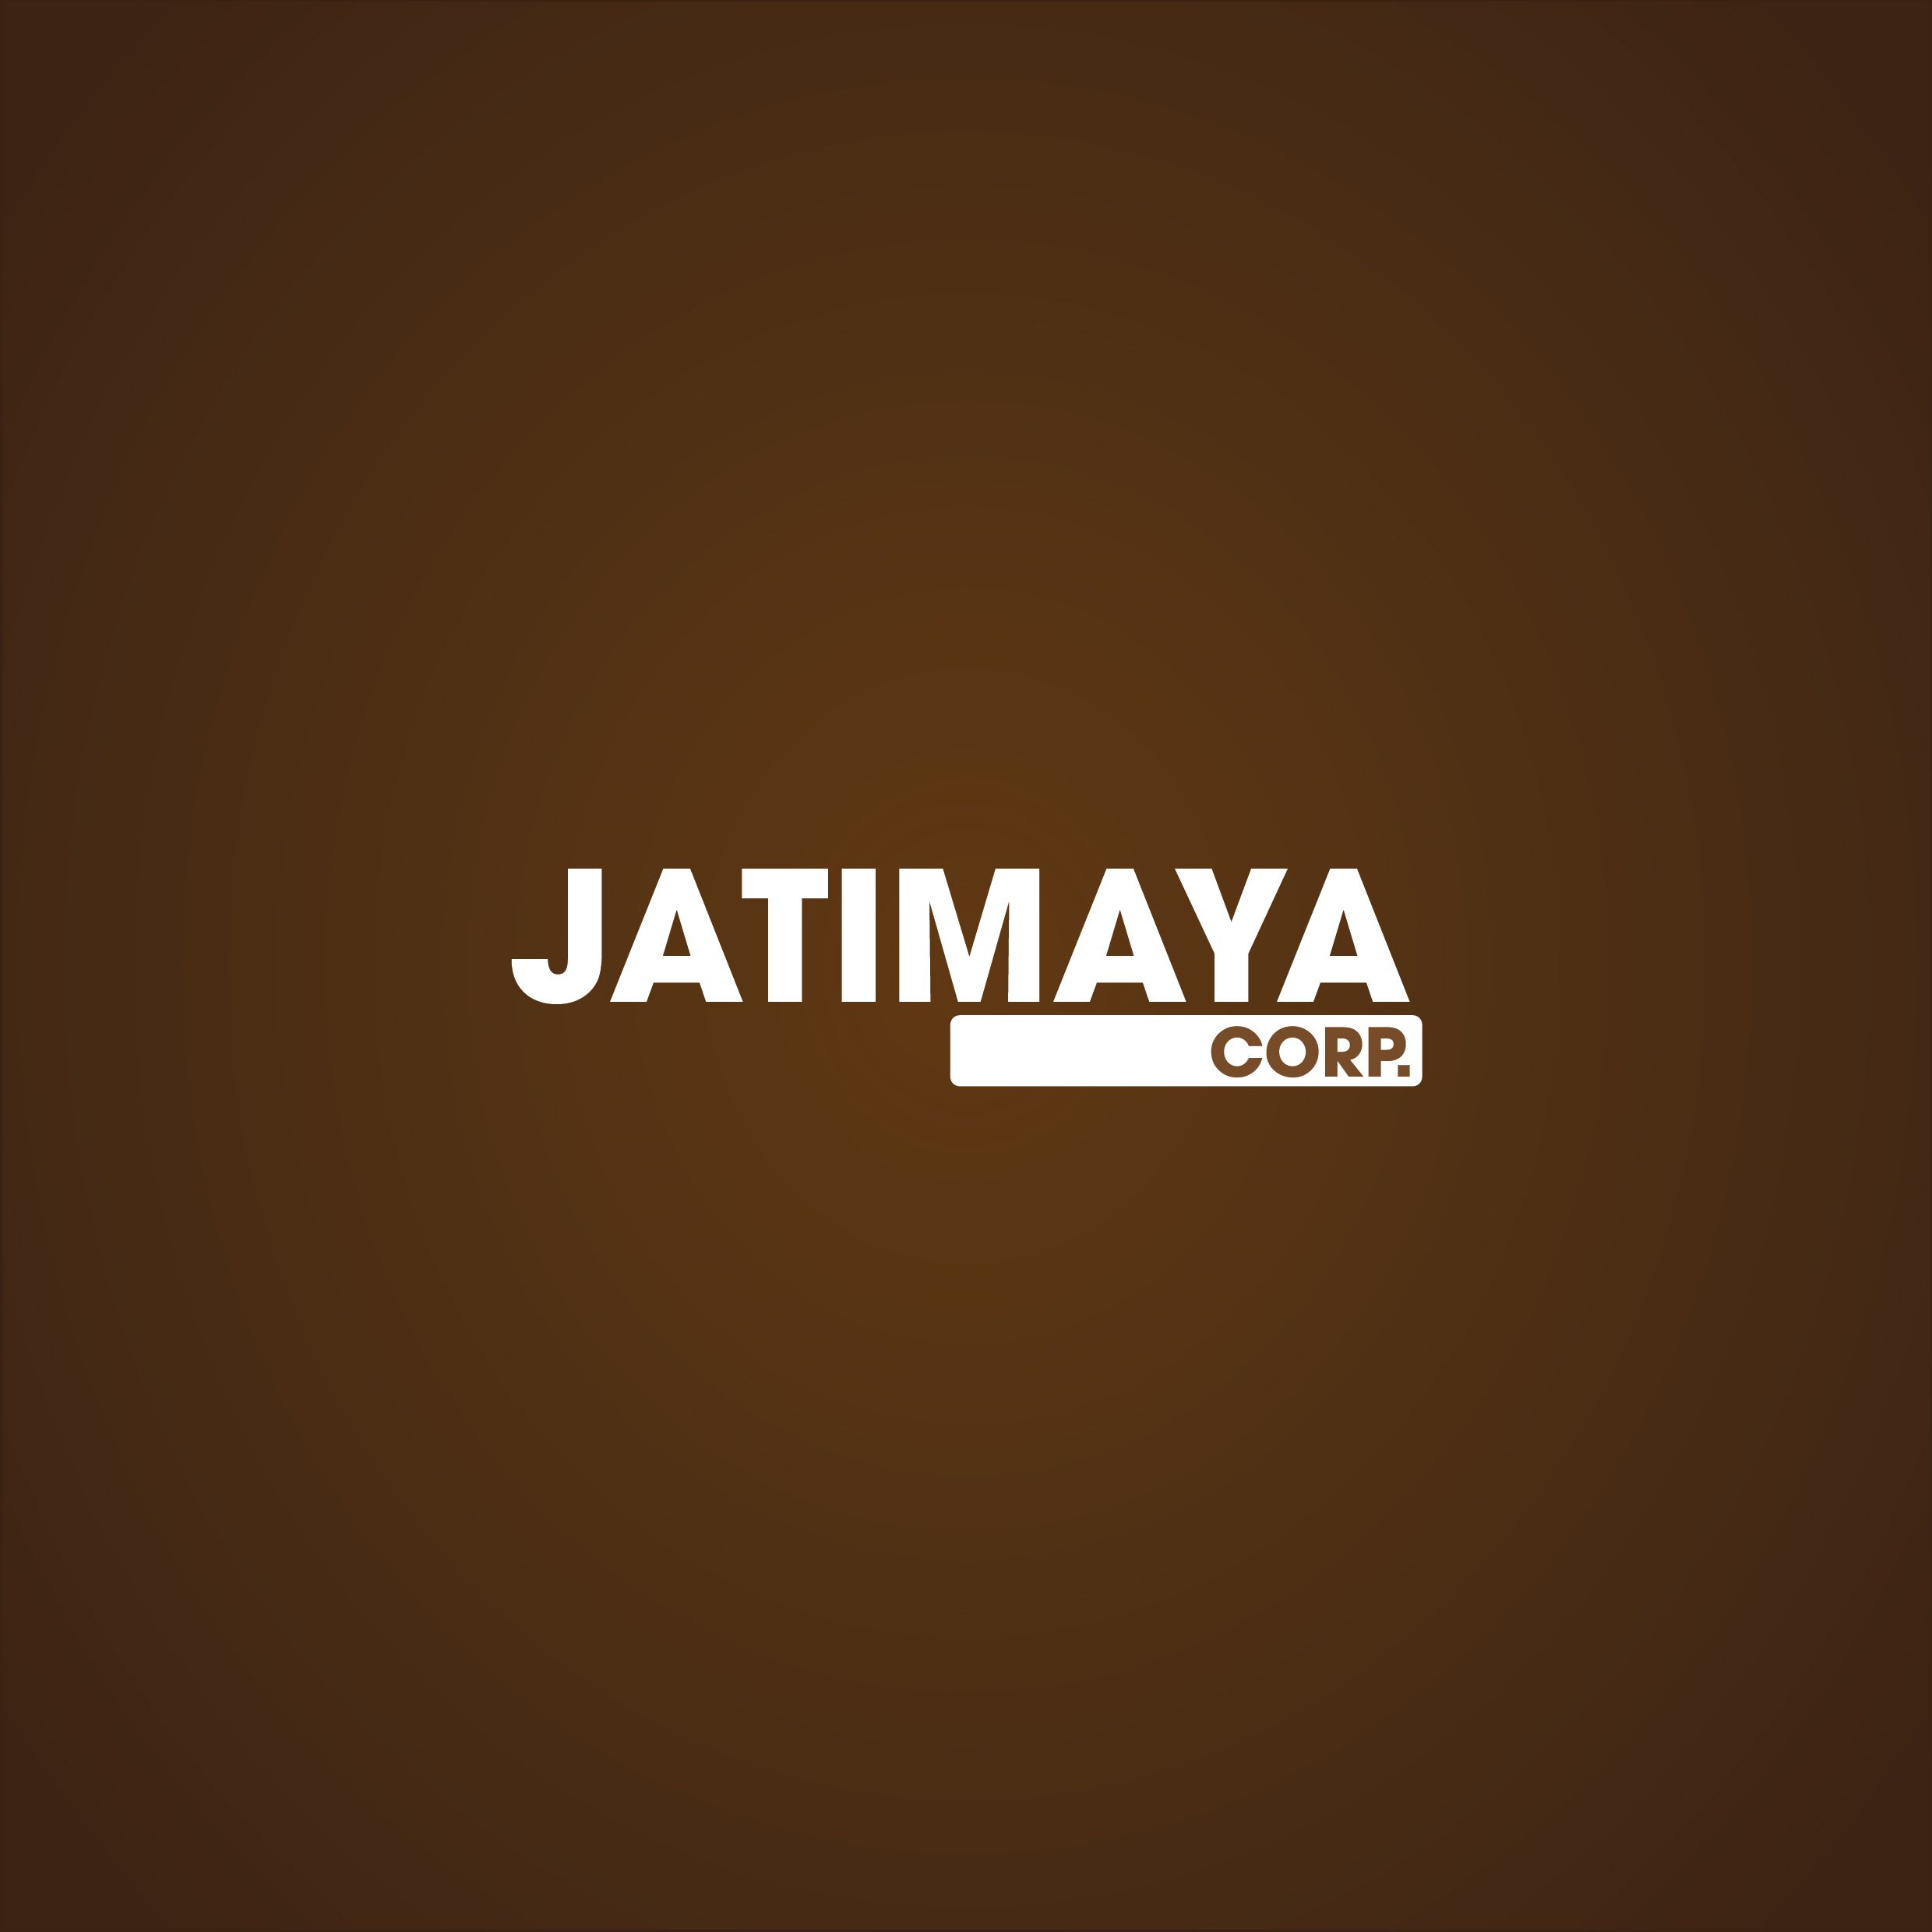 Jatimaya Corp